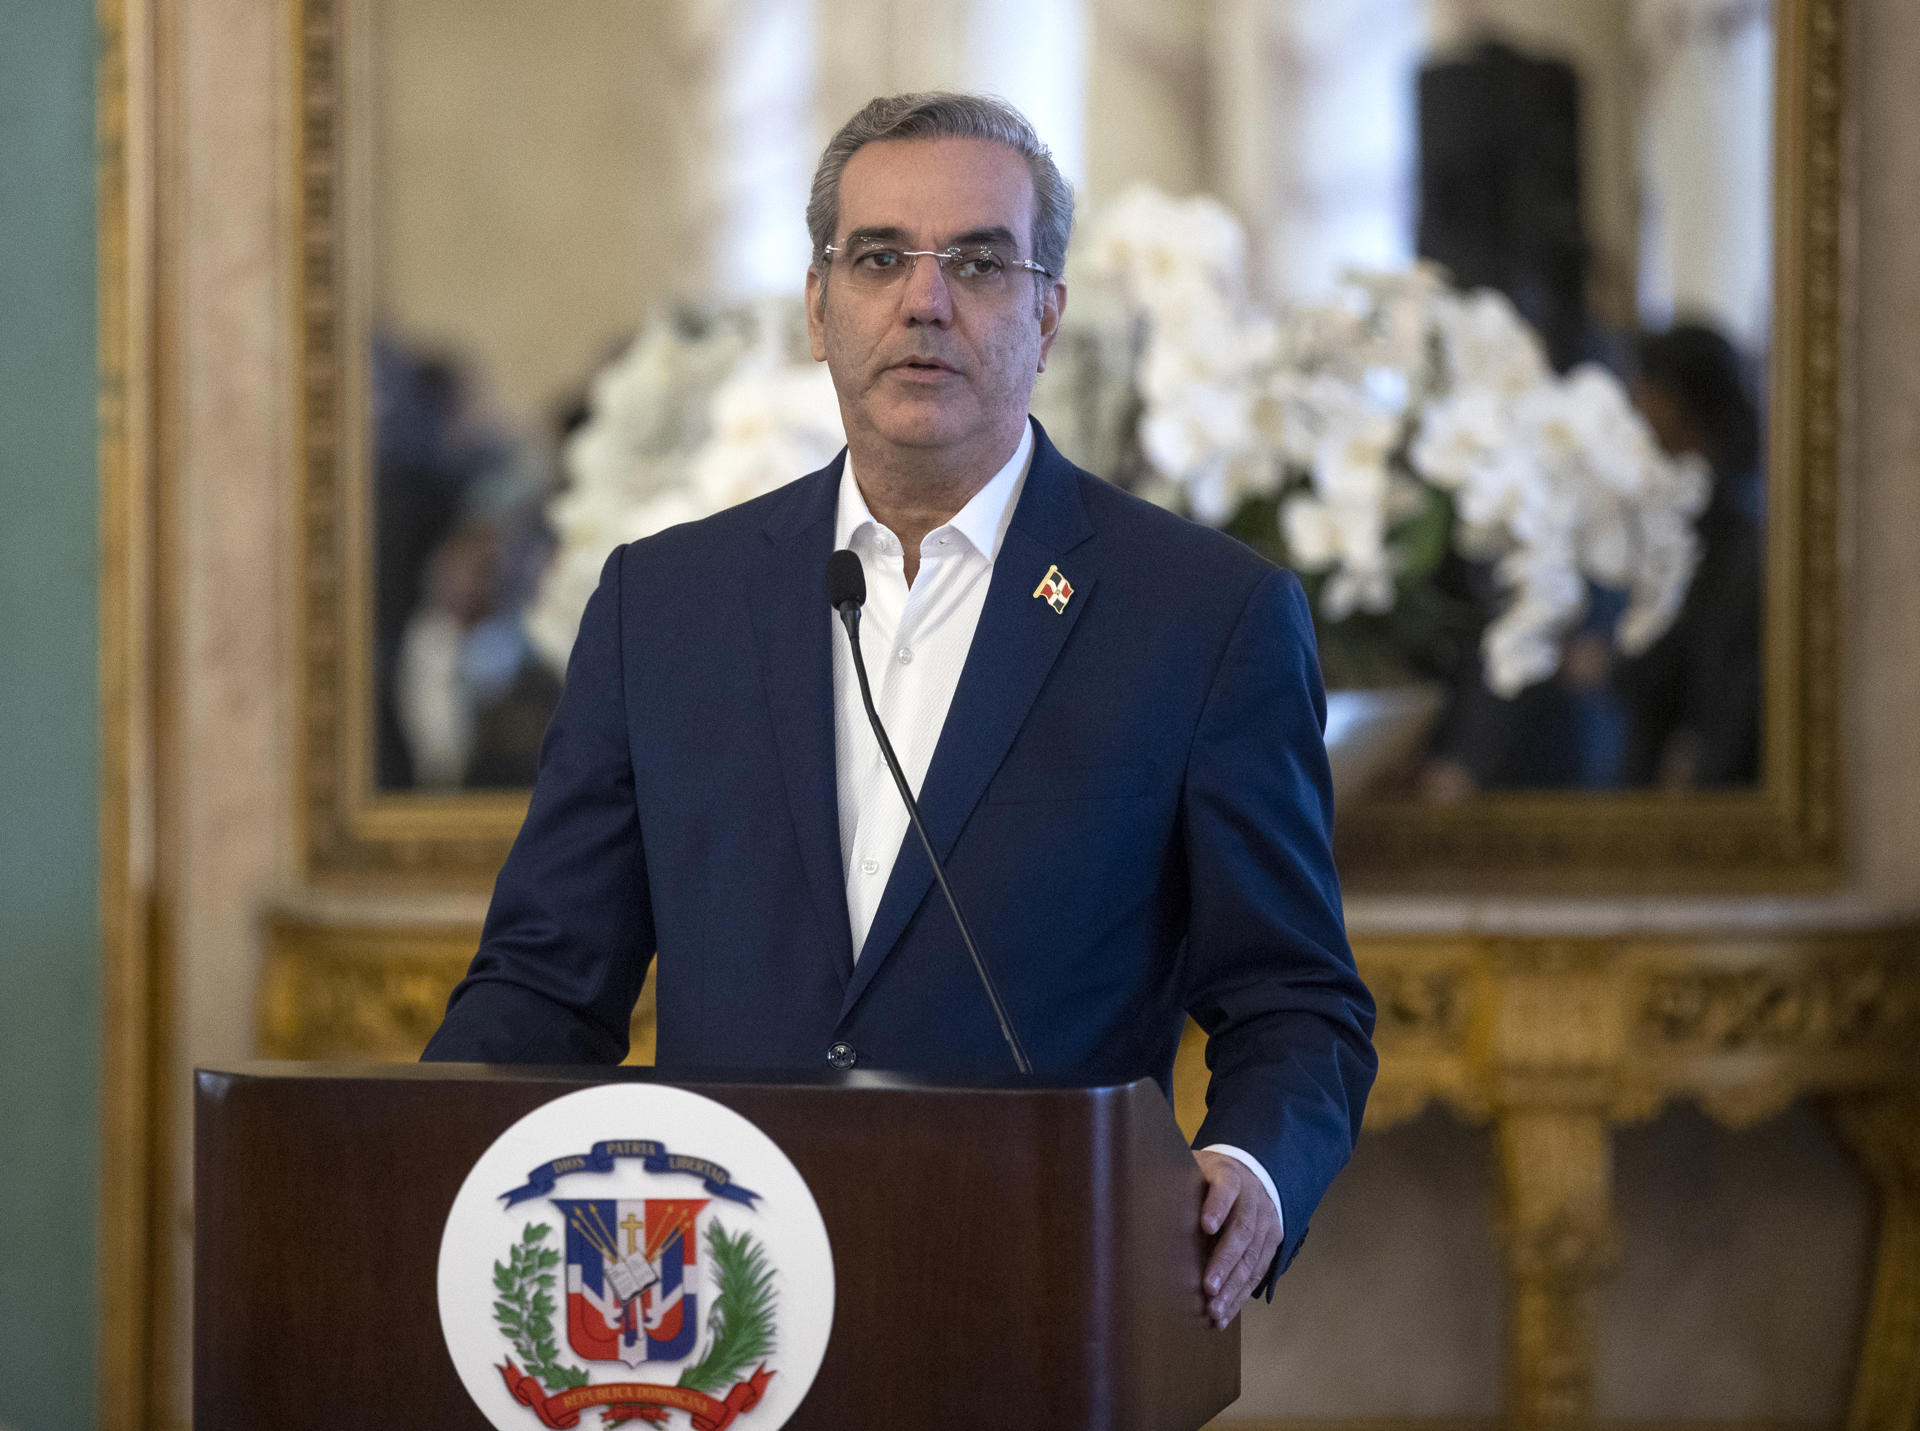 El presidente de República Dominicana, Luis Abinader, en una fotografía de archivo. EFE/Orlando Barría